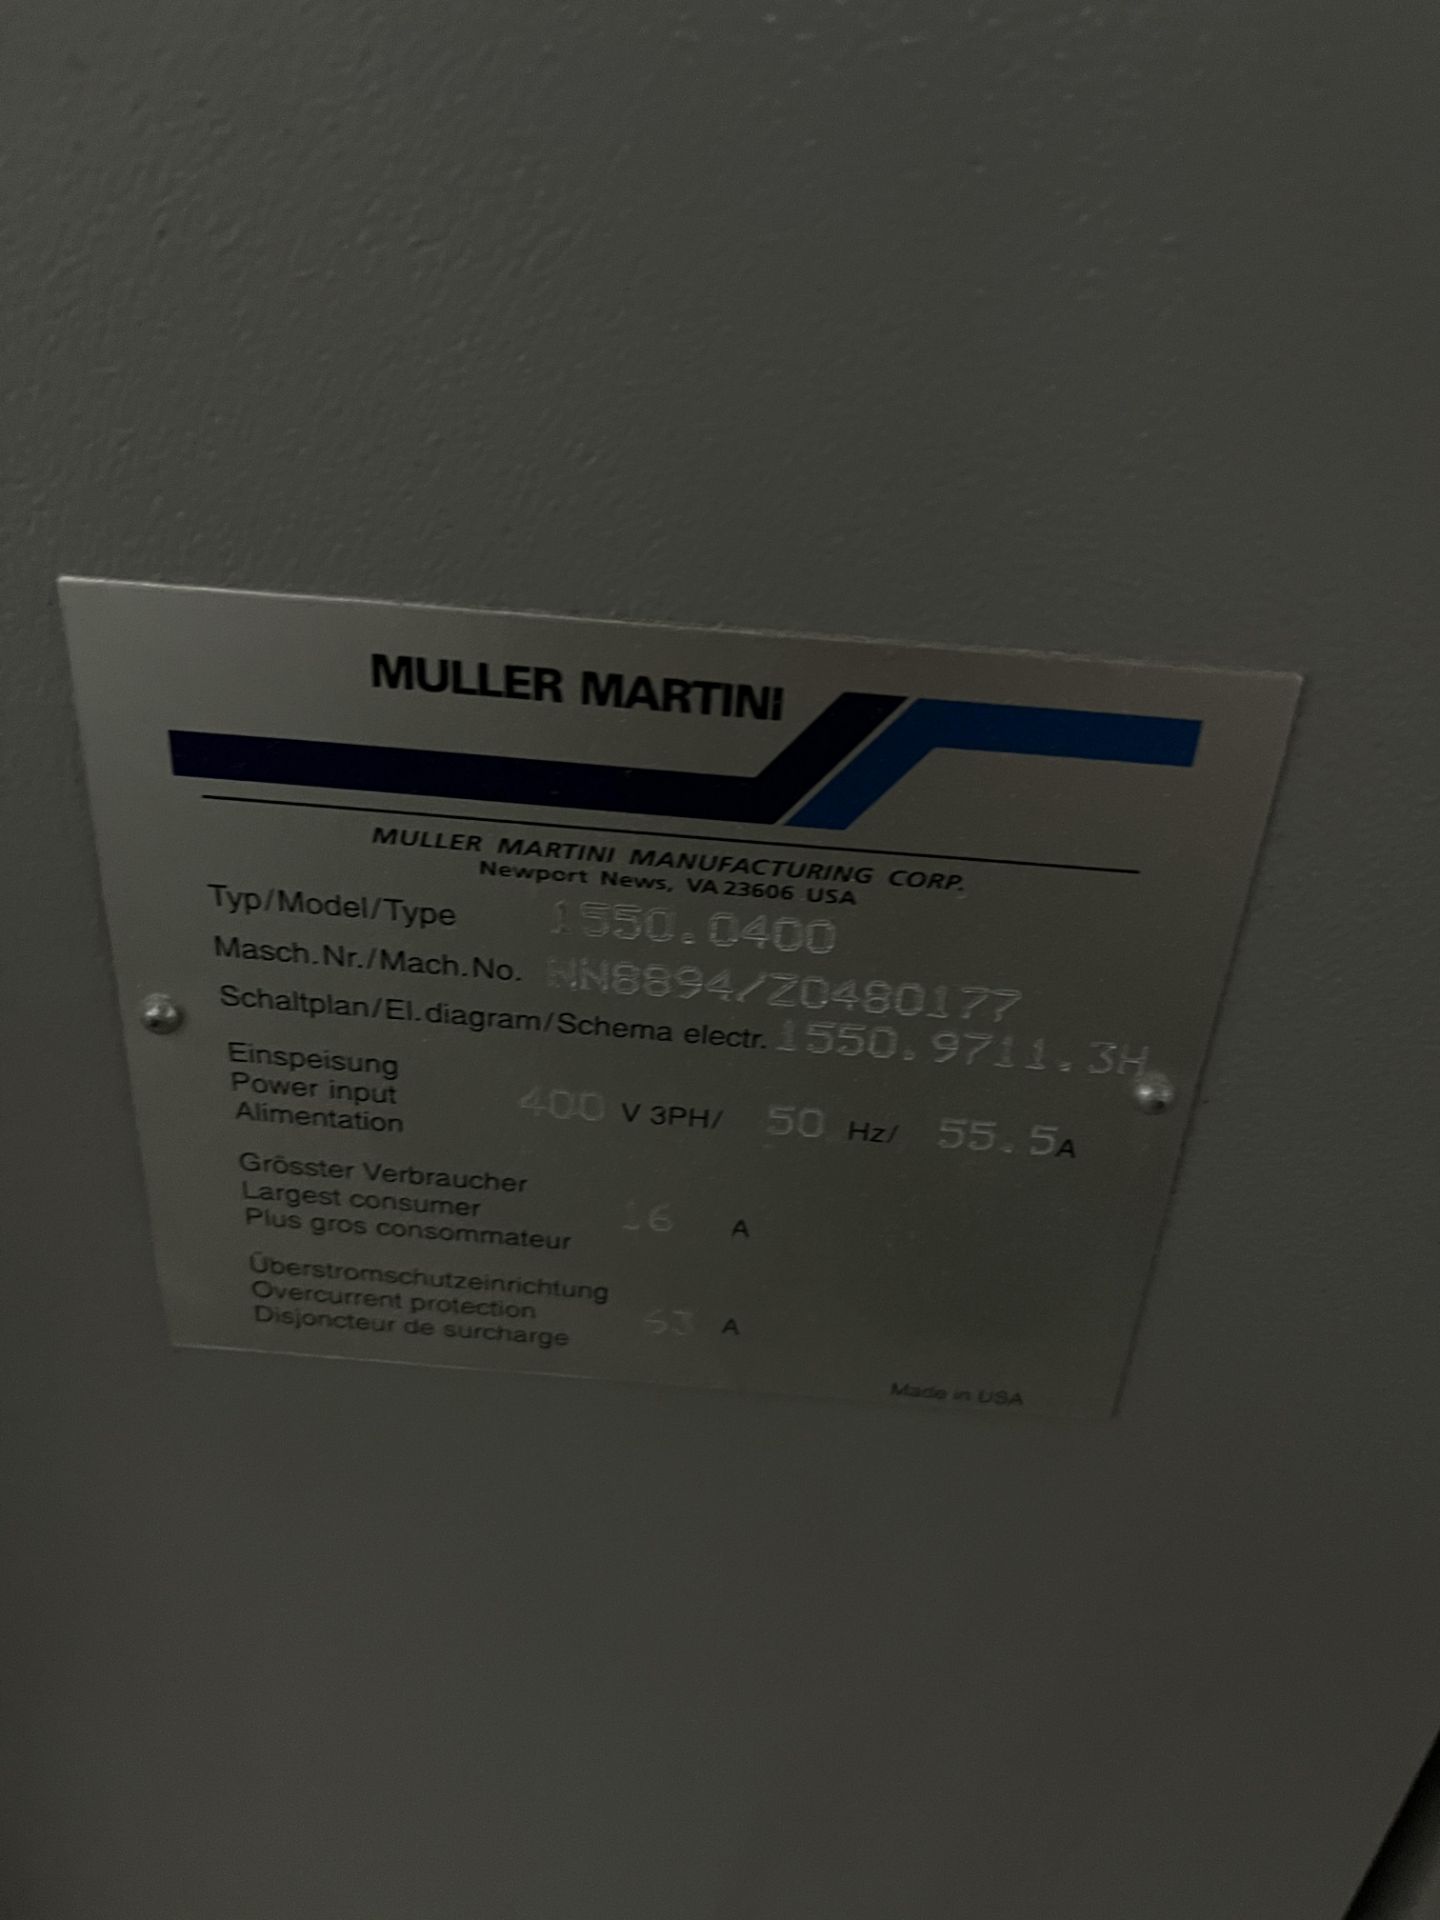 Muller Martini Saddle Stitcher - Image 9 of 13